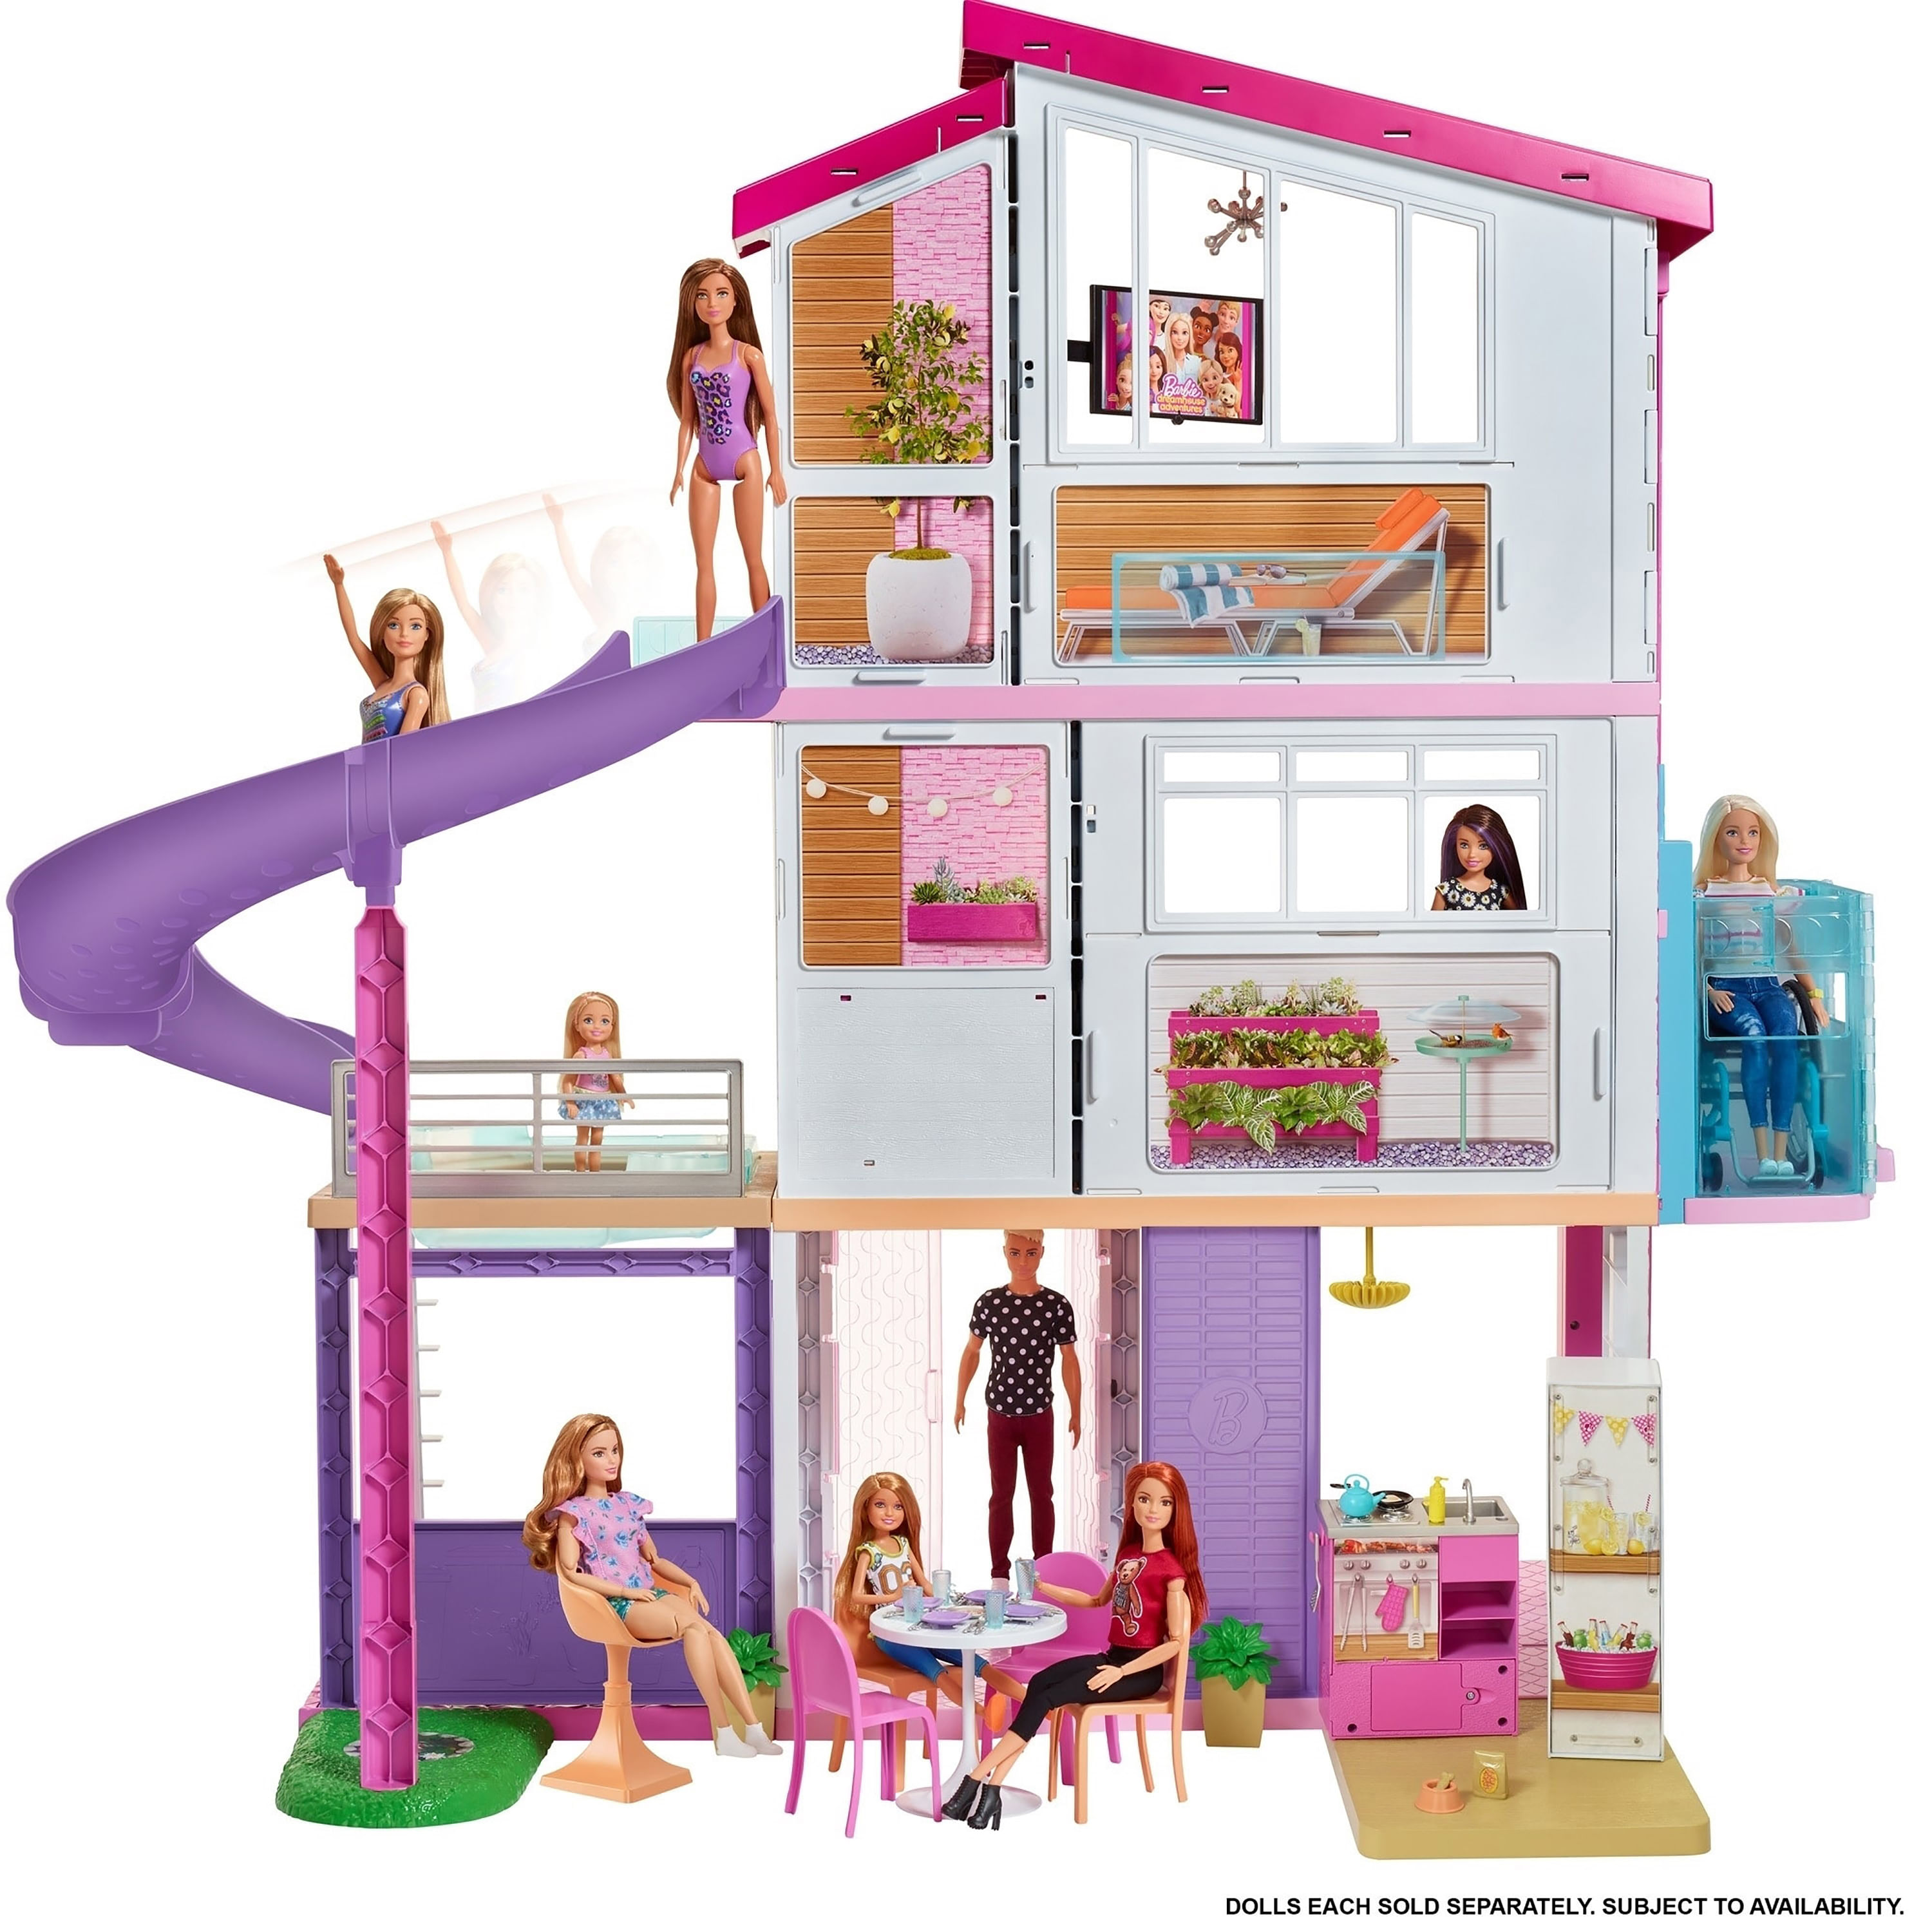 Лучший дом барби. Дом мечты для Барби fhy73. Дом для куклы Барби fhy73. Кукольный дом Barbie Dreamhouse Барби дом мечты. Barbie дом мечты трехэтажный с лифтом и мебелью gnh53.